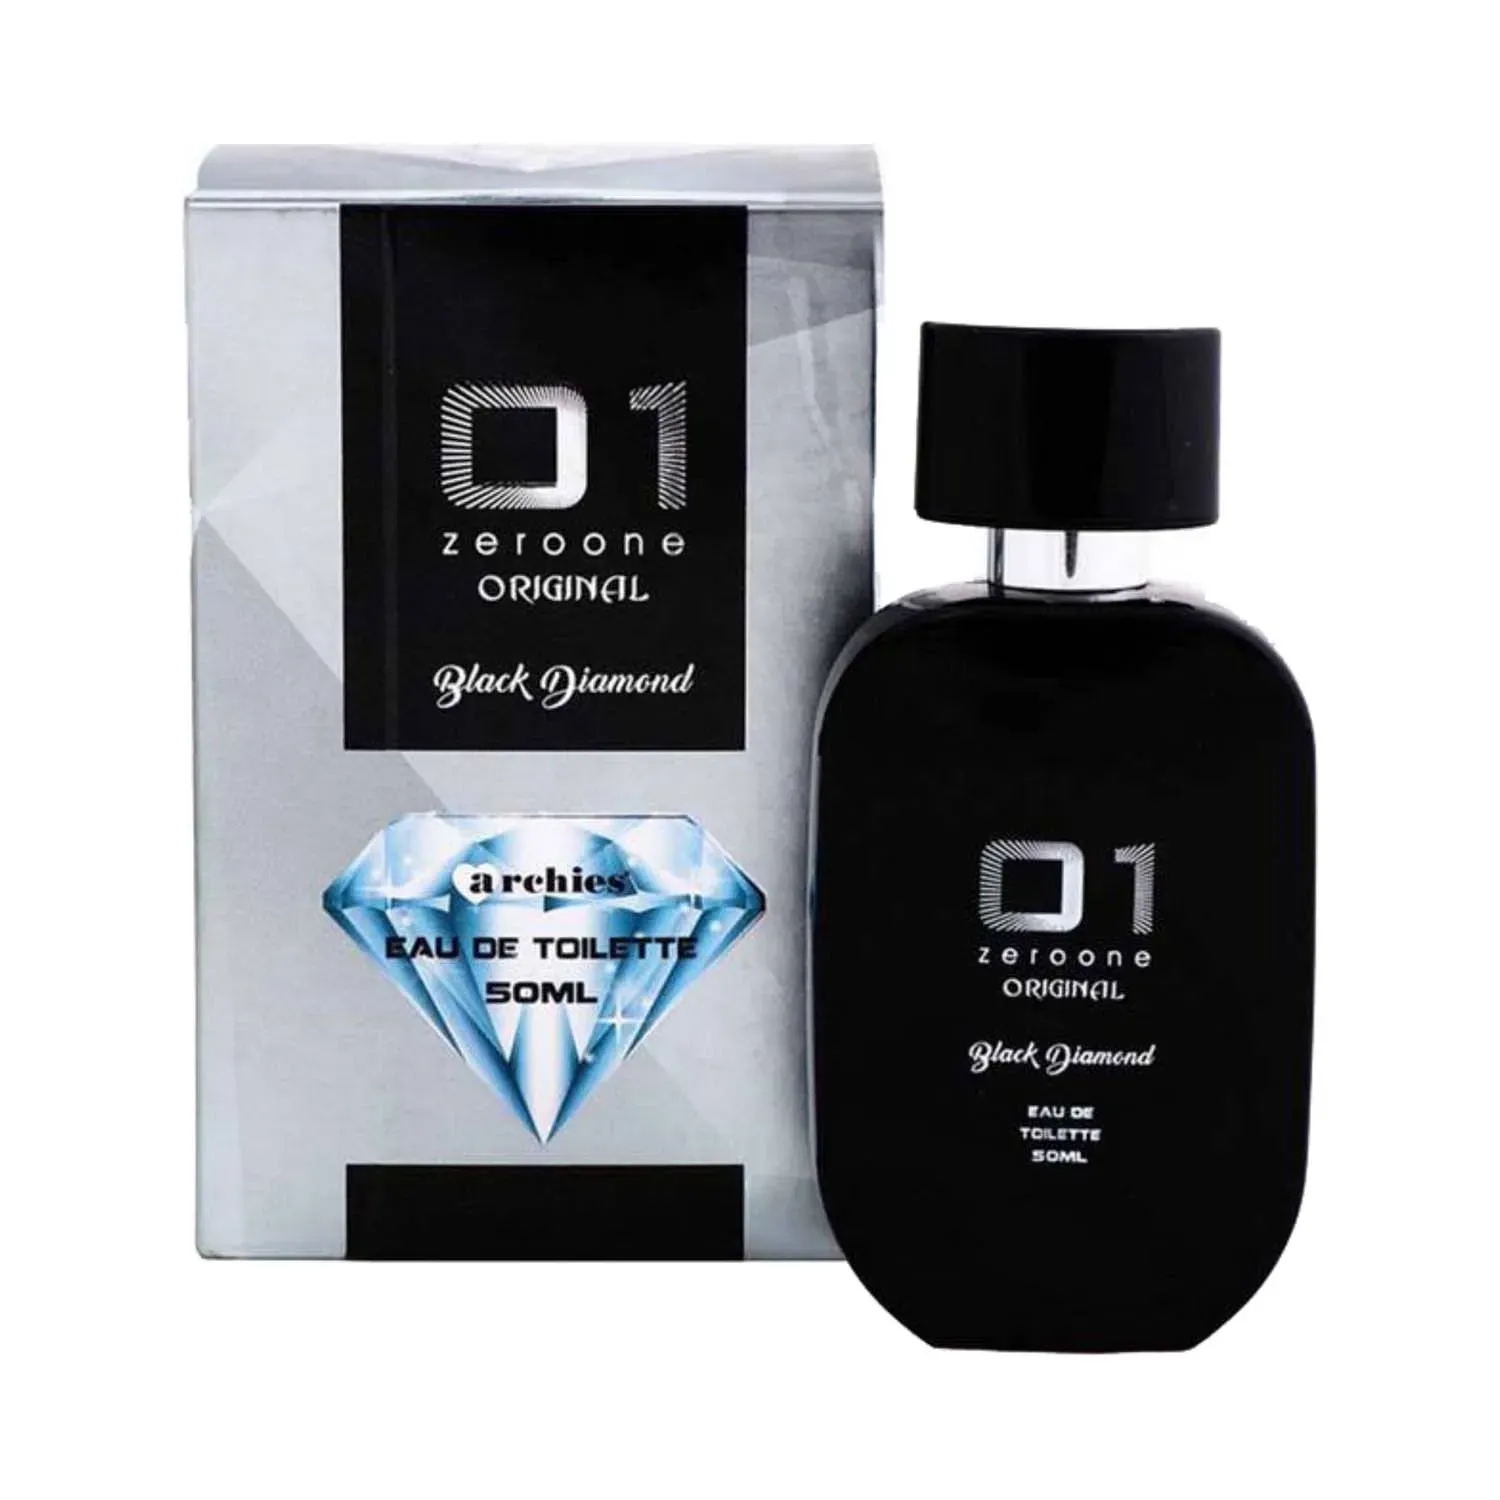 Archies Parfum | Archies Parfum 01 Original Black Diamond Eau De Toilette (50ml)